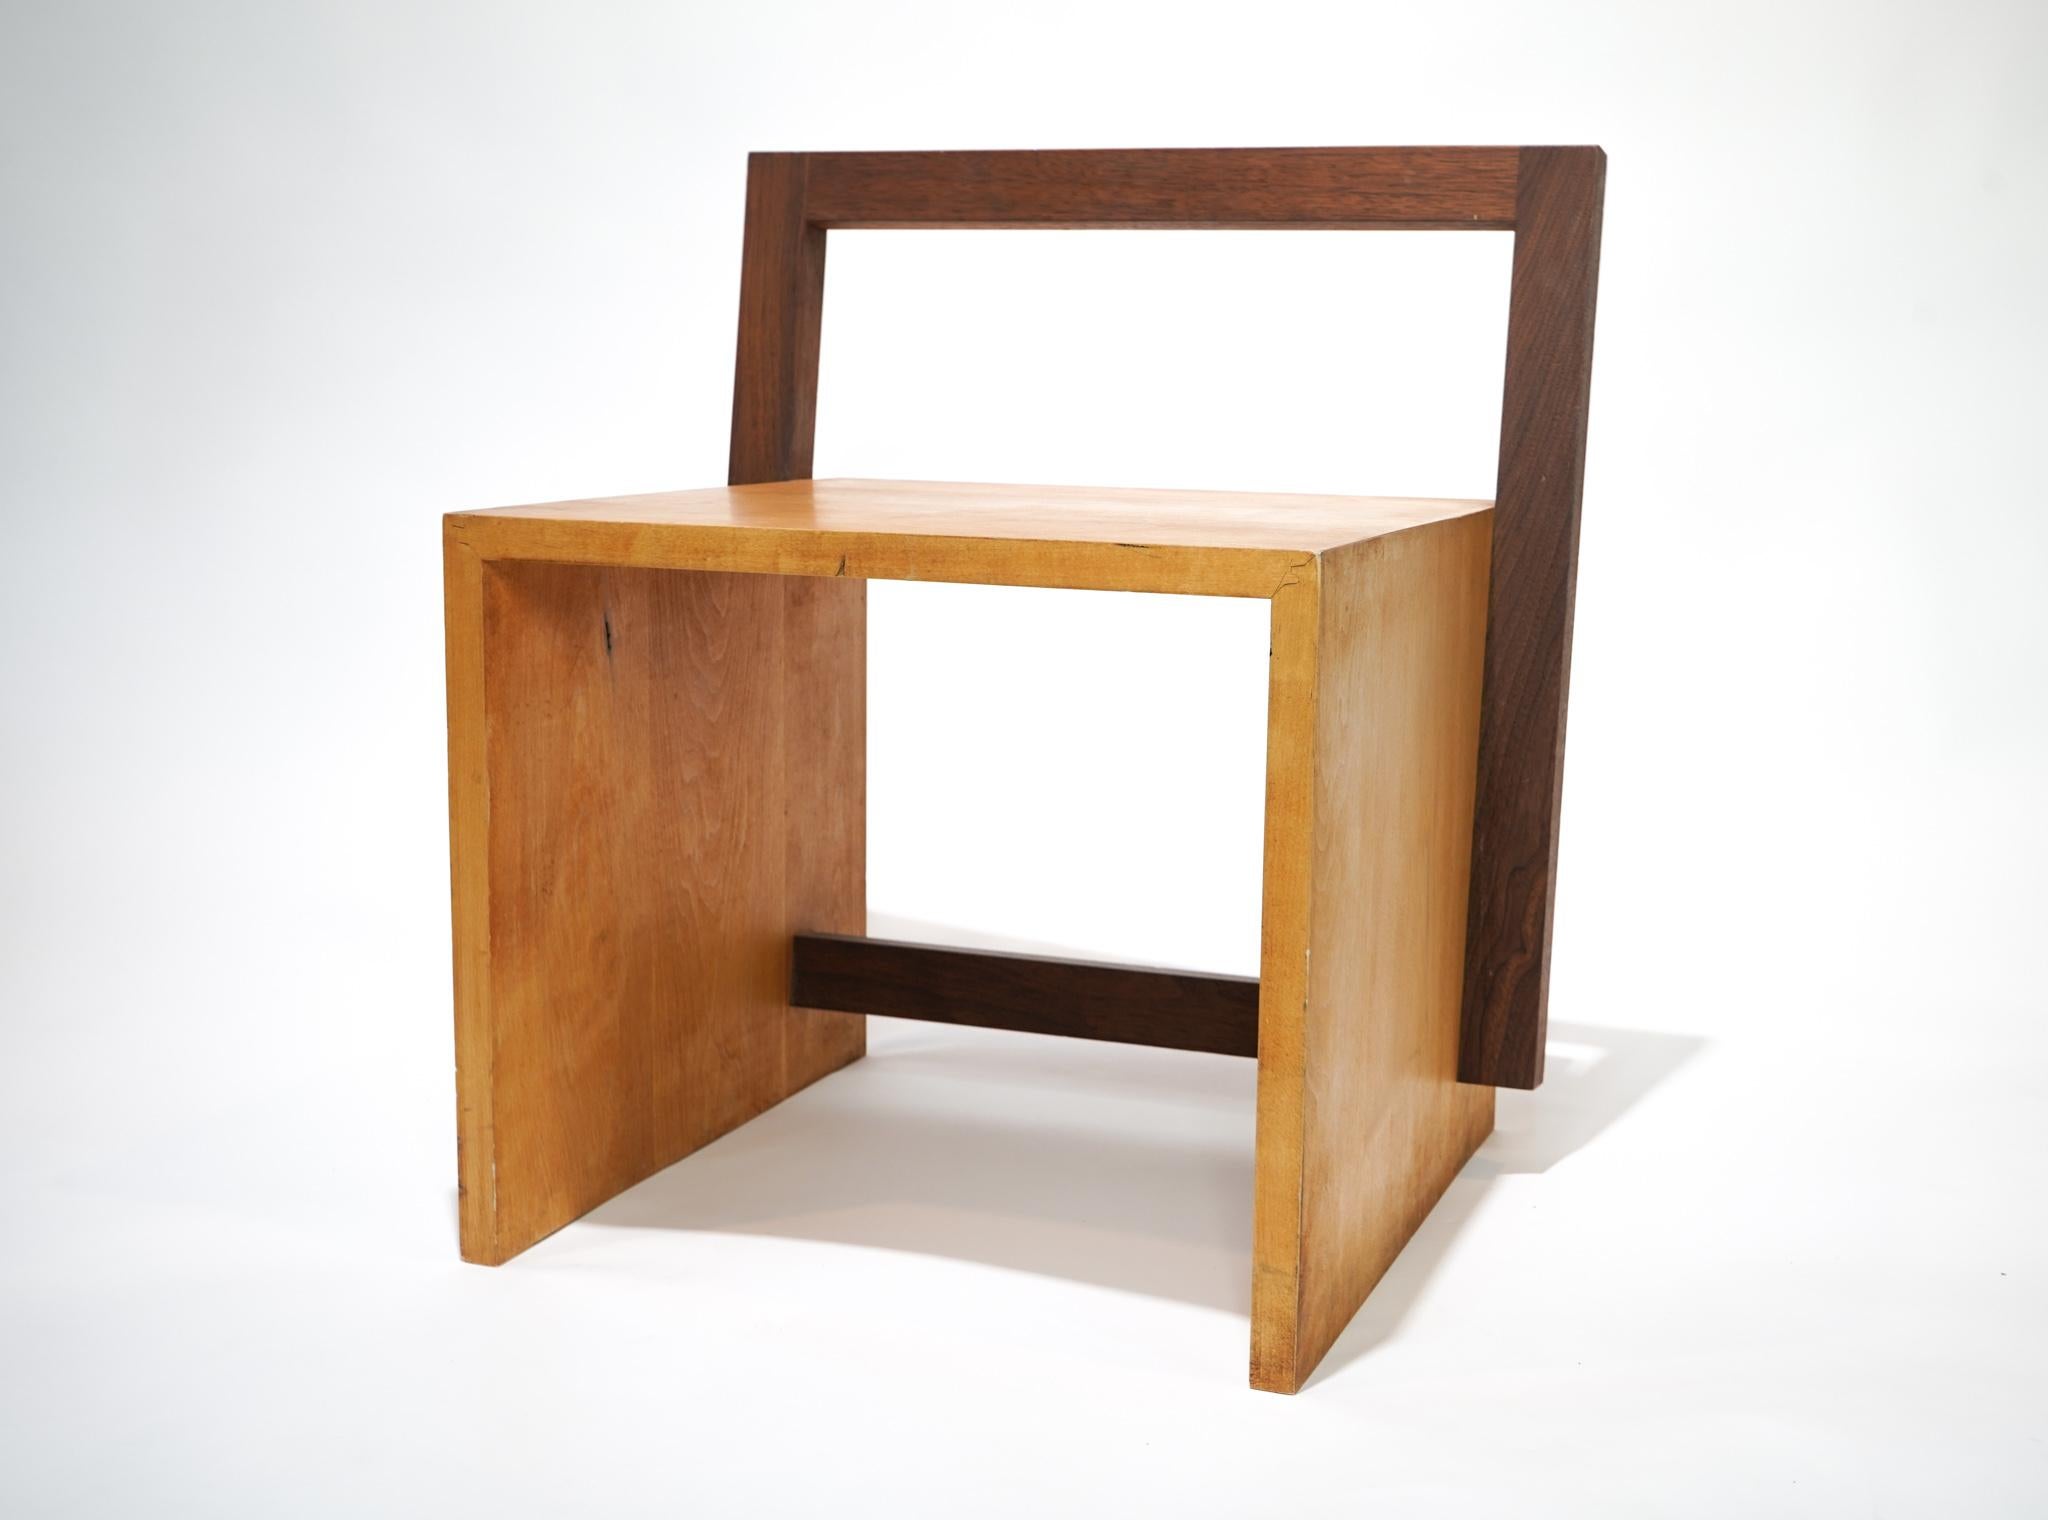 Minimalistischer Loungesessel aus Holz von Tadao Arimoto. Ein großartiges Beispiel für das Design des japanisch-amerikanischen Meisters der Holzbearbeitung, Tadao Arimoto. Das Design verbindet die minimalistische Geometrie und die organische